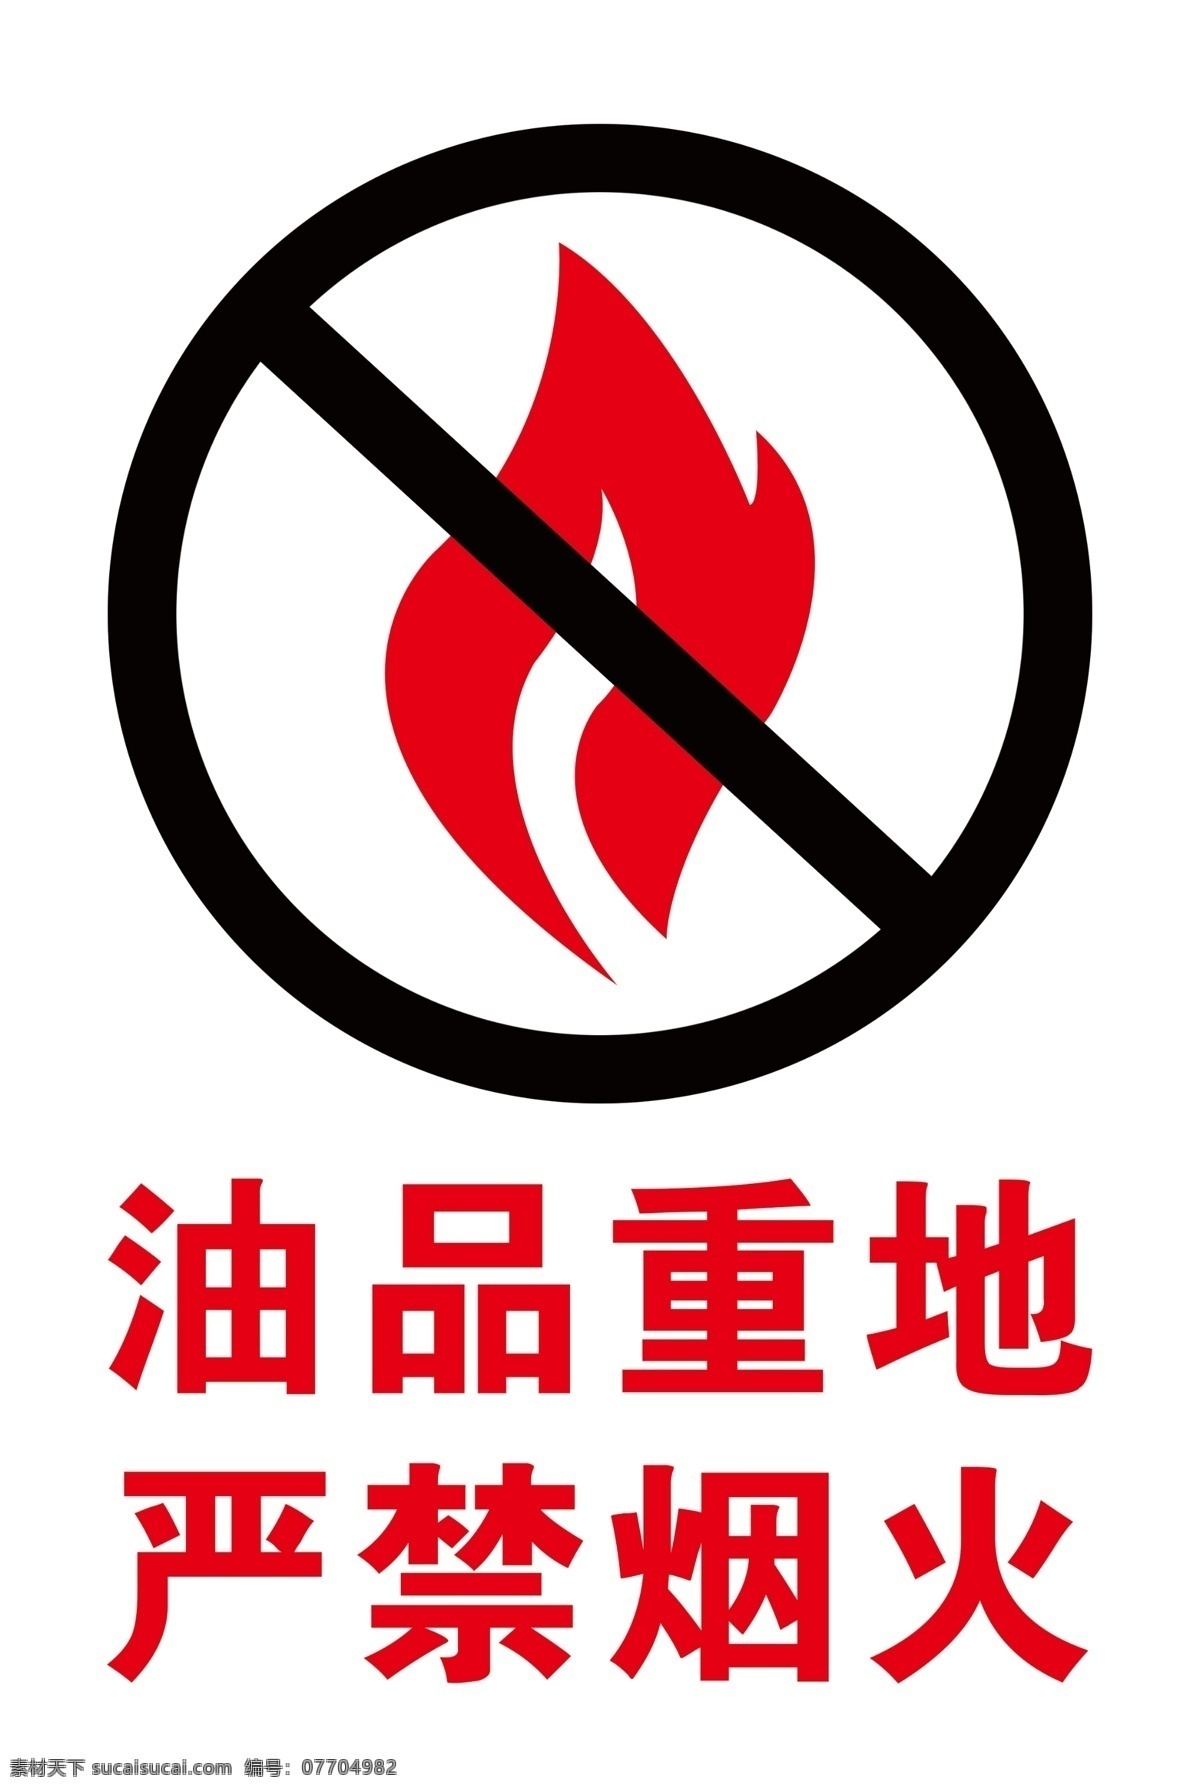 油品重地 严禁烟火 警示标志 严禁标志 警示标示 分层